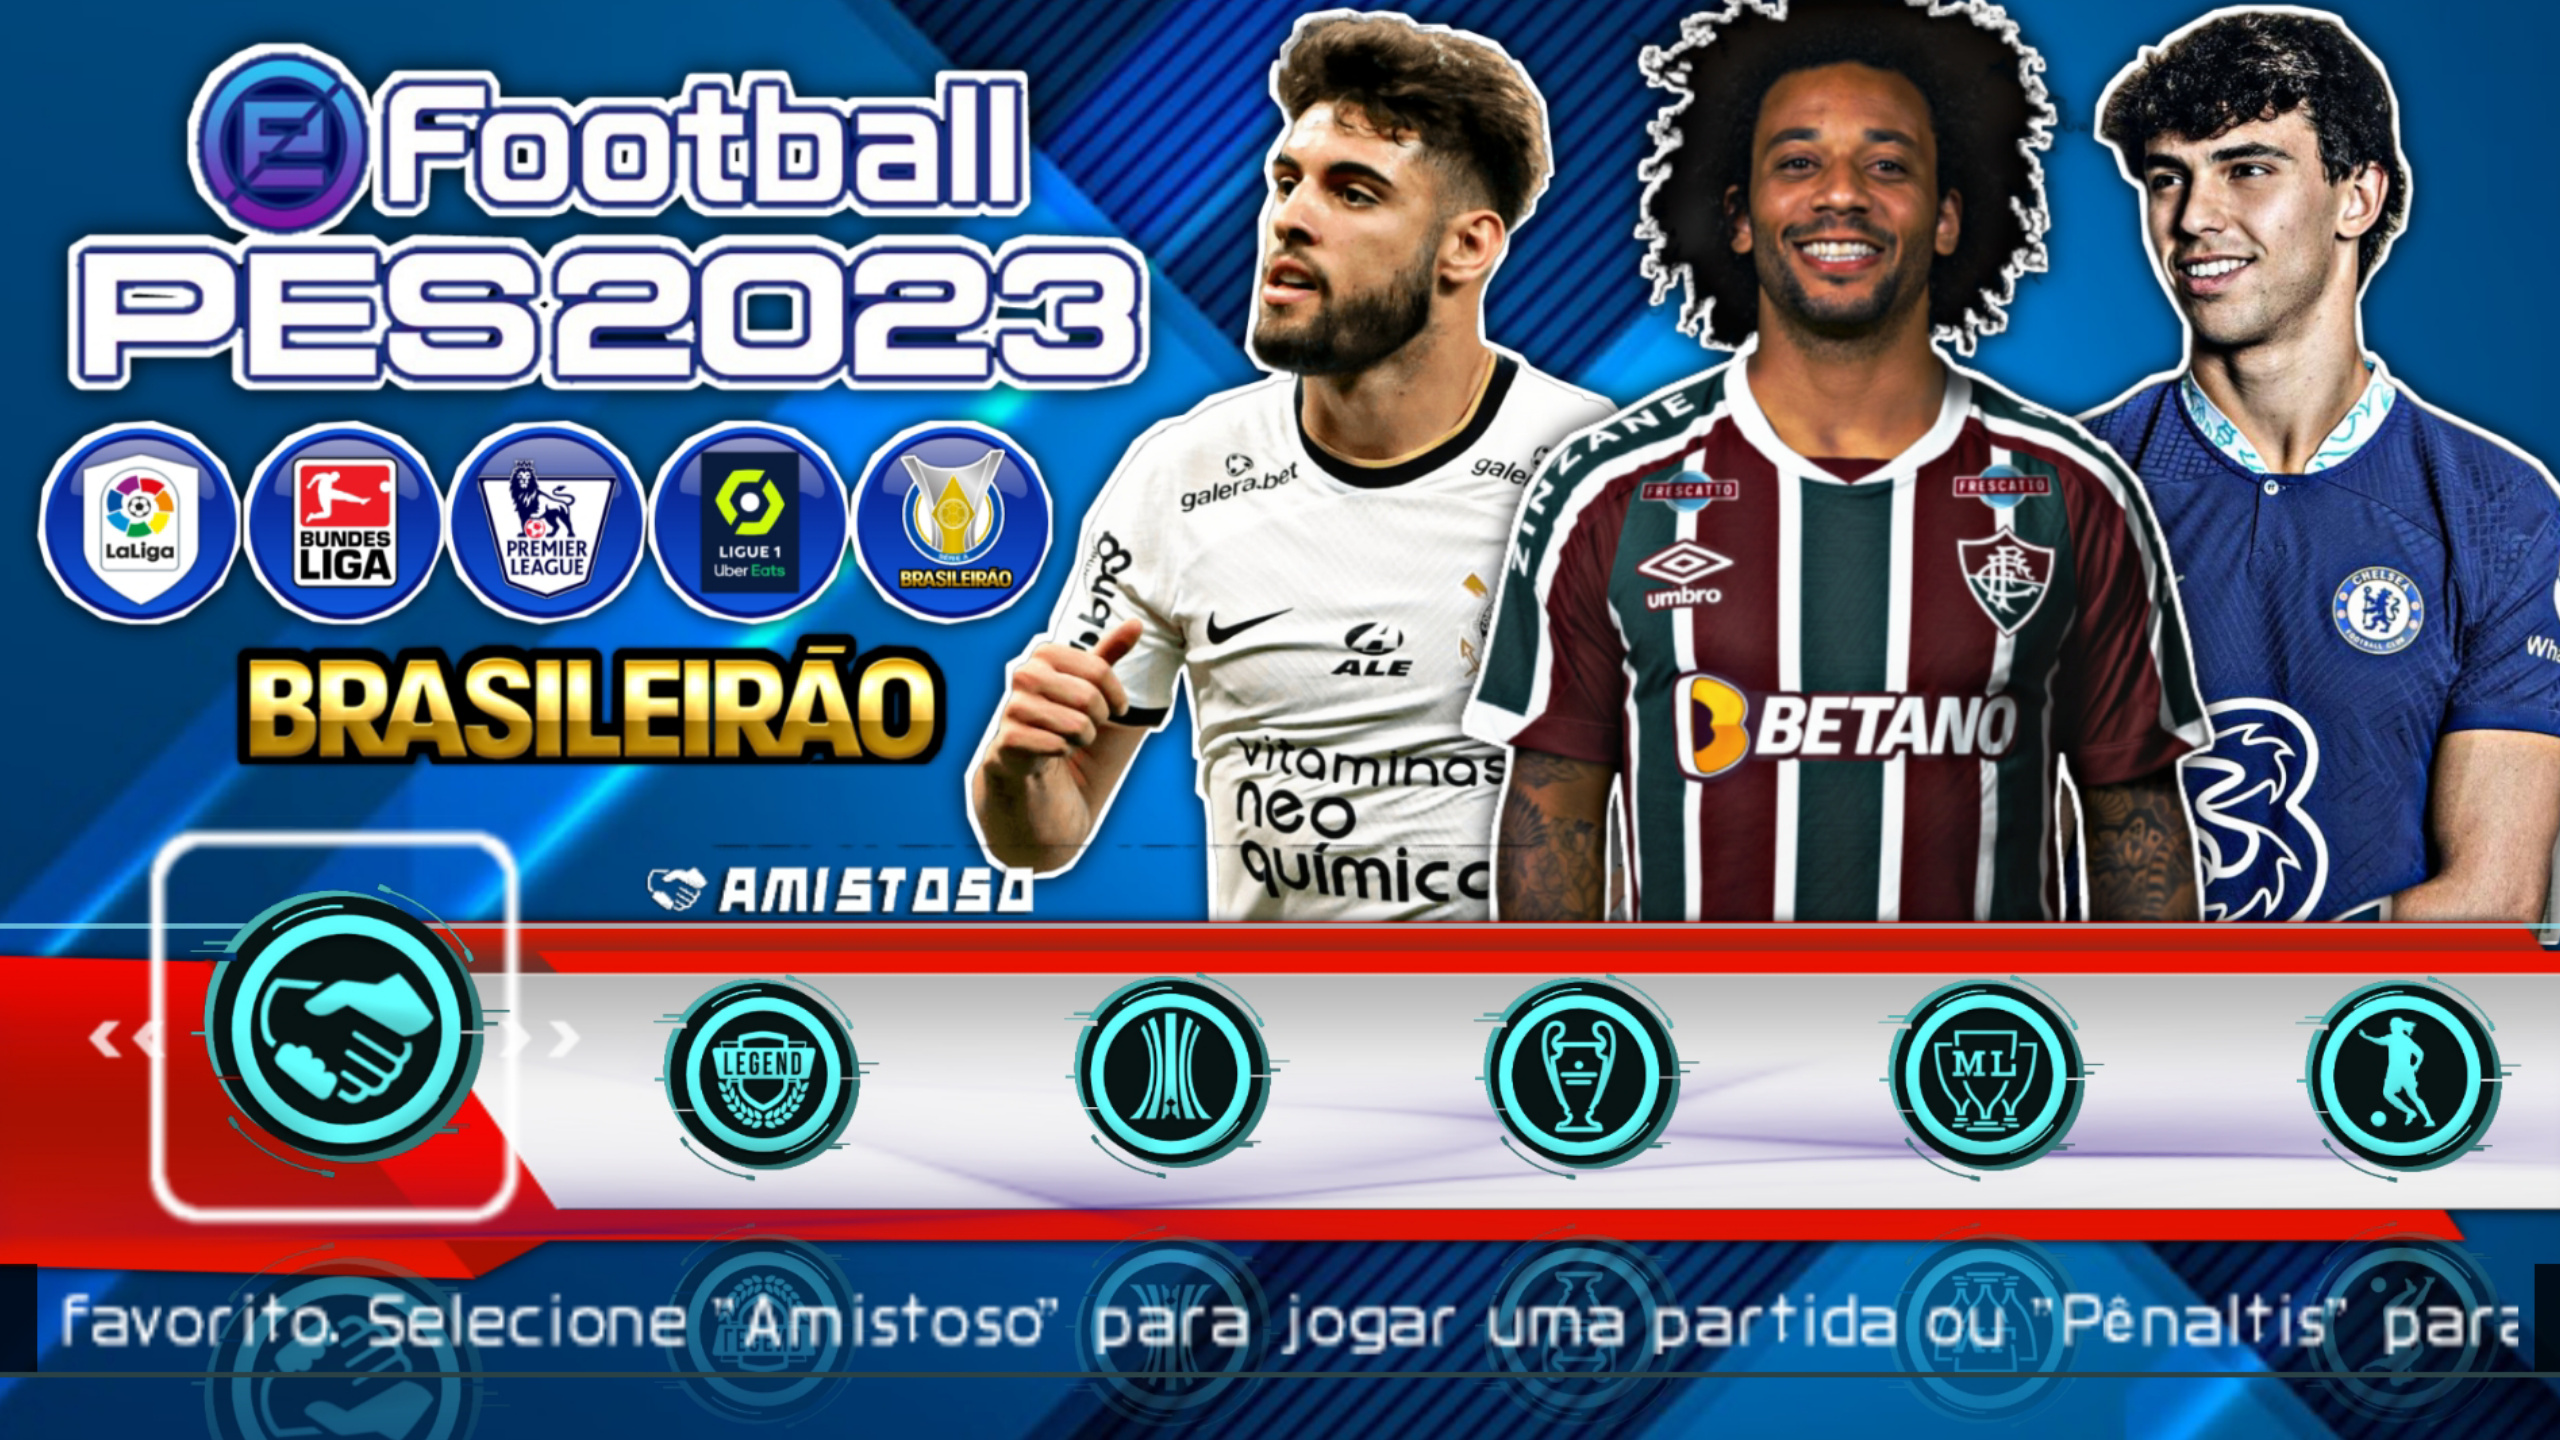 NOVO! EFOOTBALL PES PPSSPP 2023 BRASILEIRÃO/EUROPEU [COMO BAIXAR E INSTALAR  LINK DIRETO] 